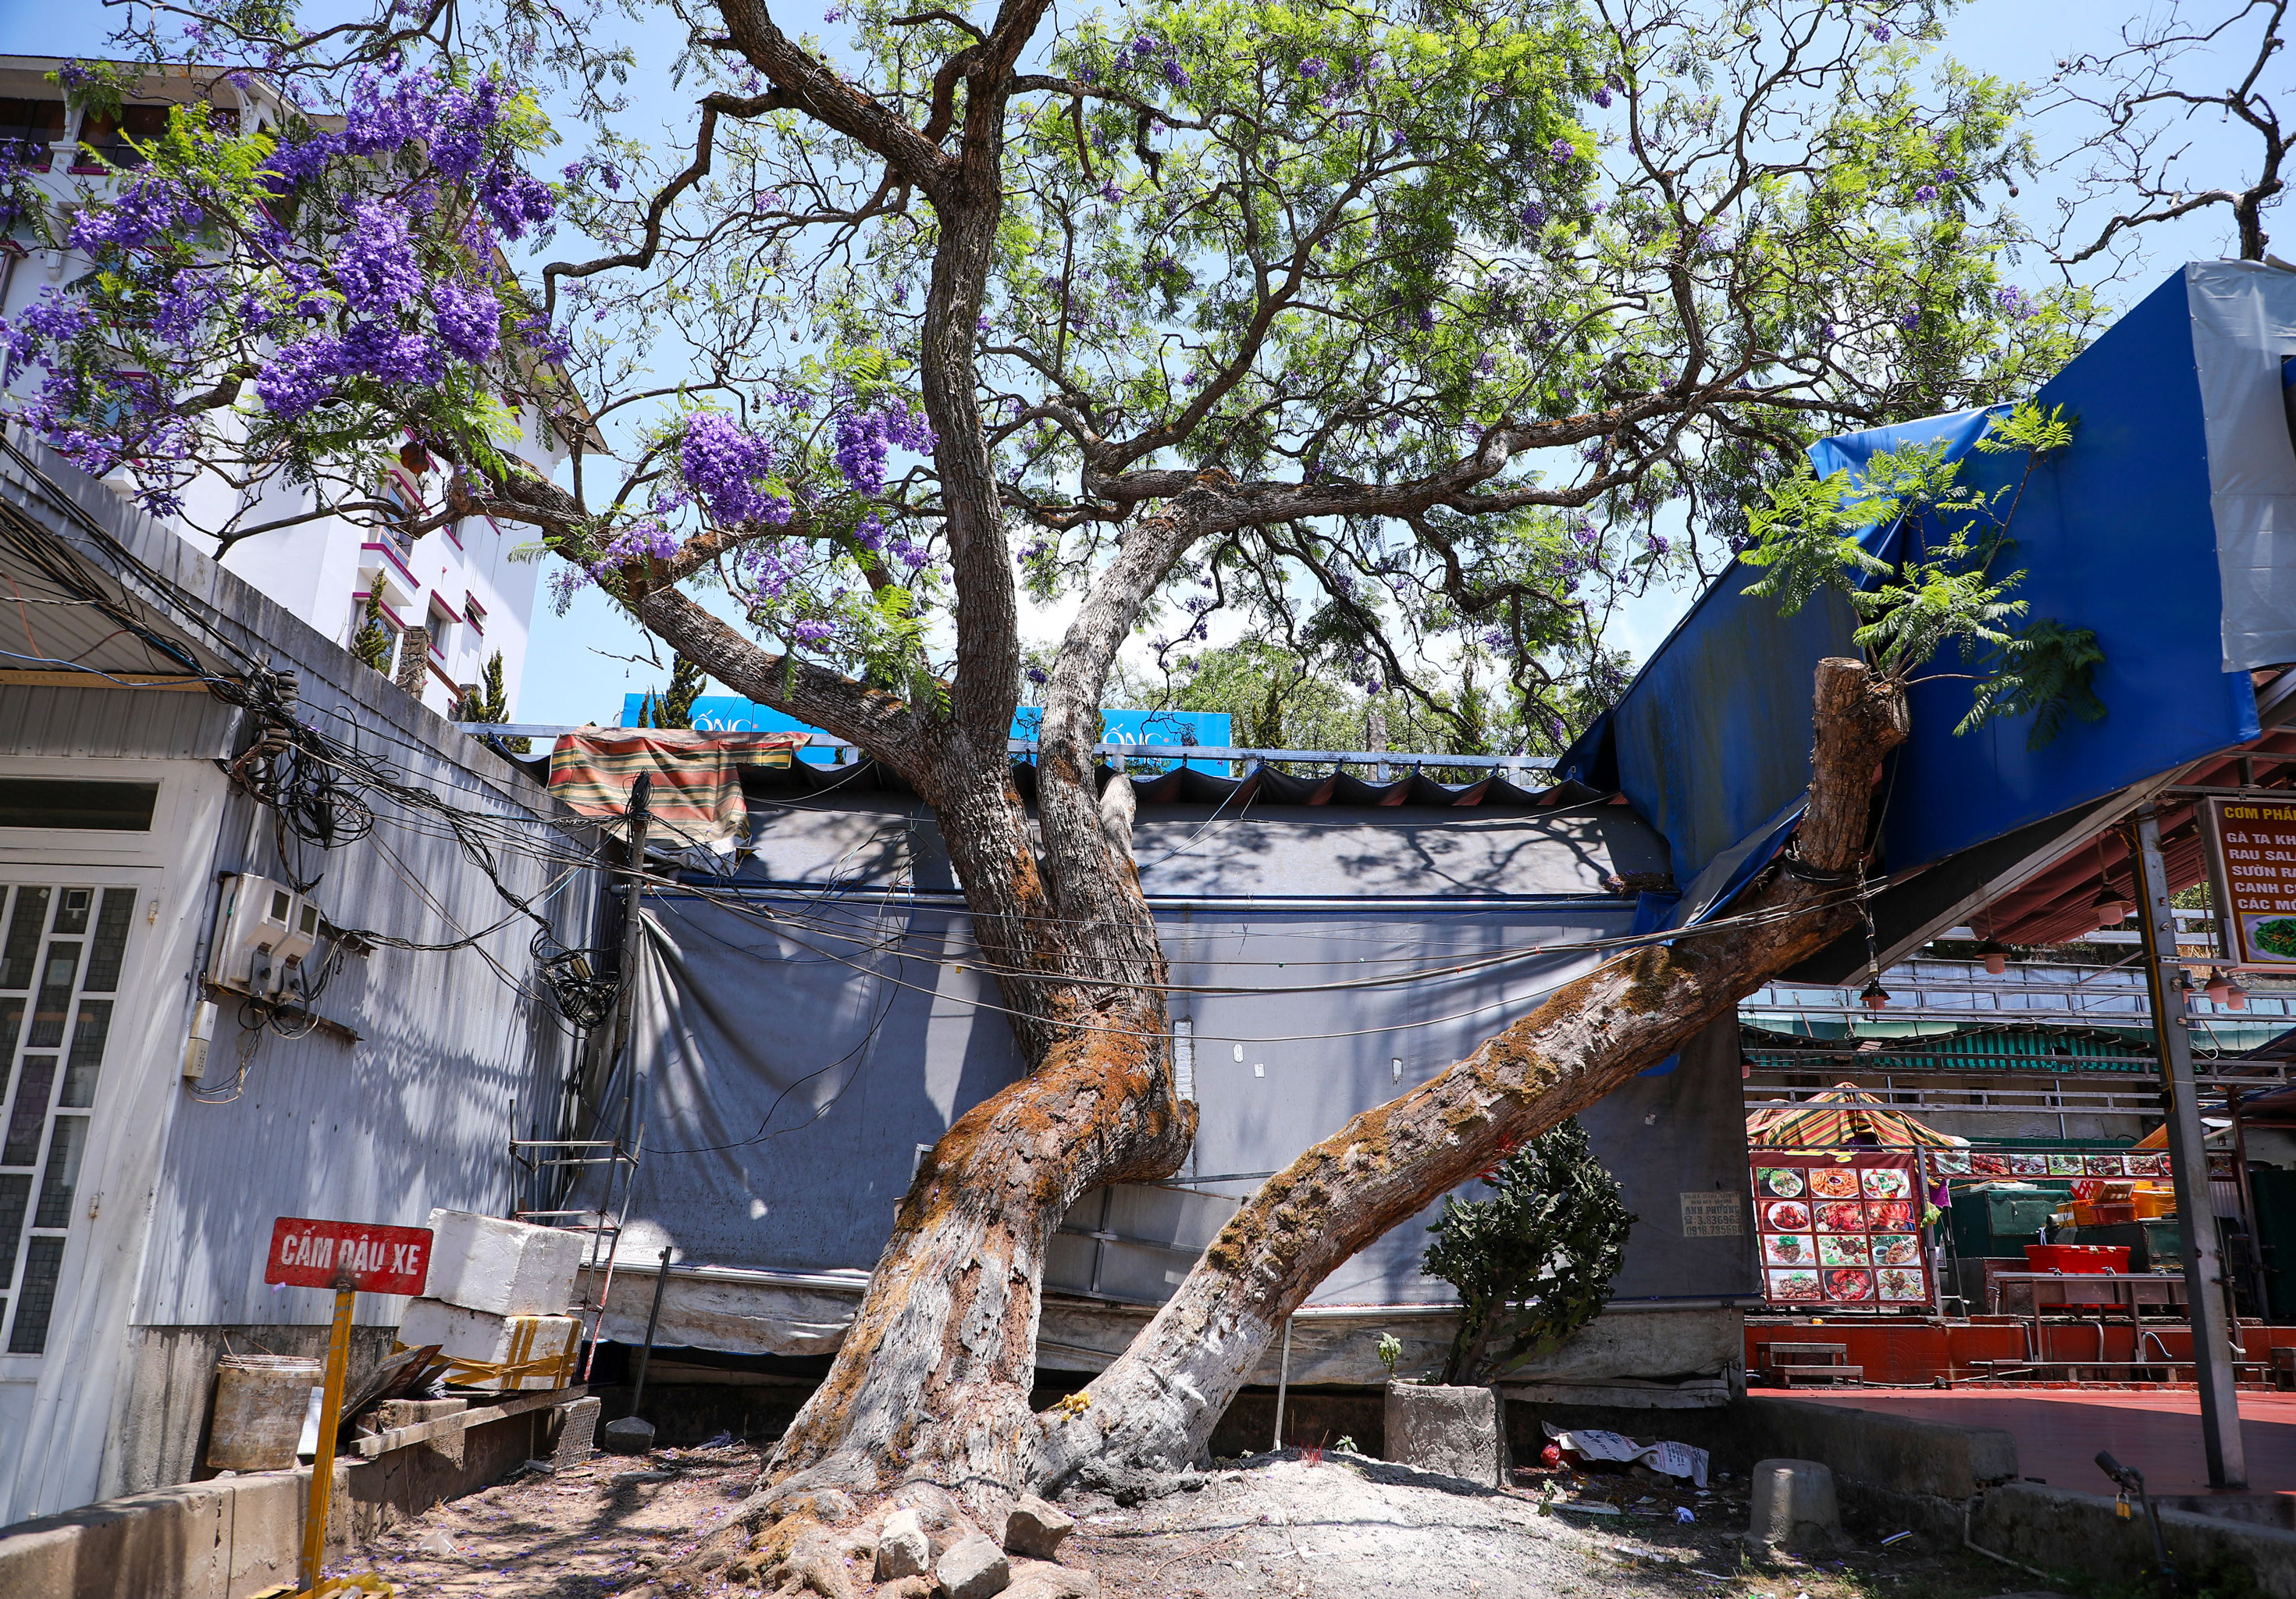 Trong số 3 cây phượng tím nhân giống thành công đầu tiên, thì cây phượng tím trên đường Nguyễn Thị Minh Khai được xem là cây có dáng cây, thế cây đẹp nhất và phát triển mạnh mẽ nhất cho đến thời điểm hiện tại. Ảnh: Mai Hương